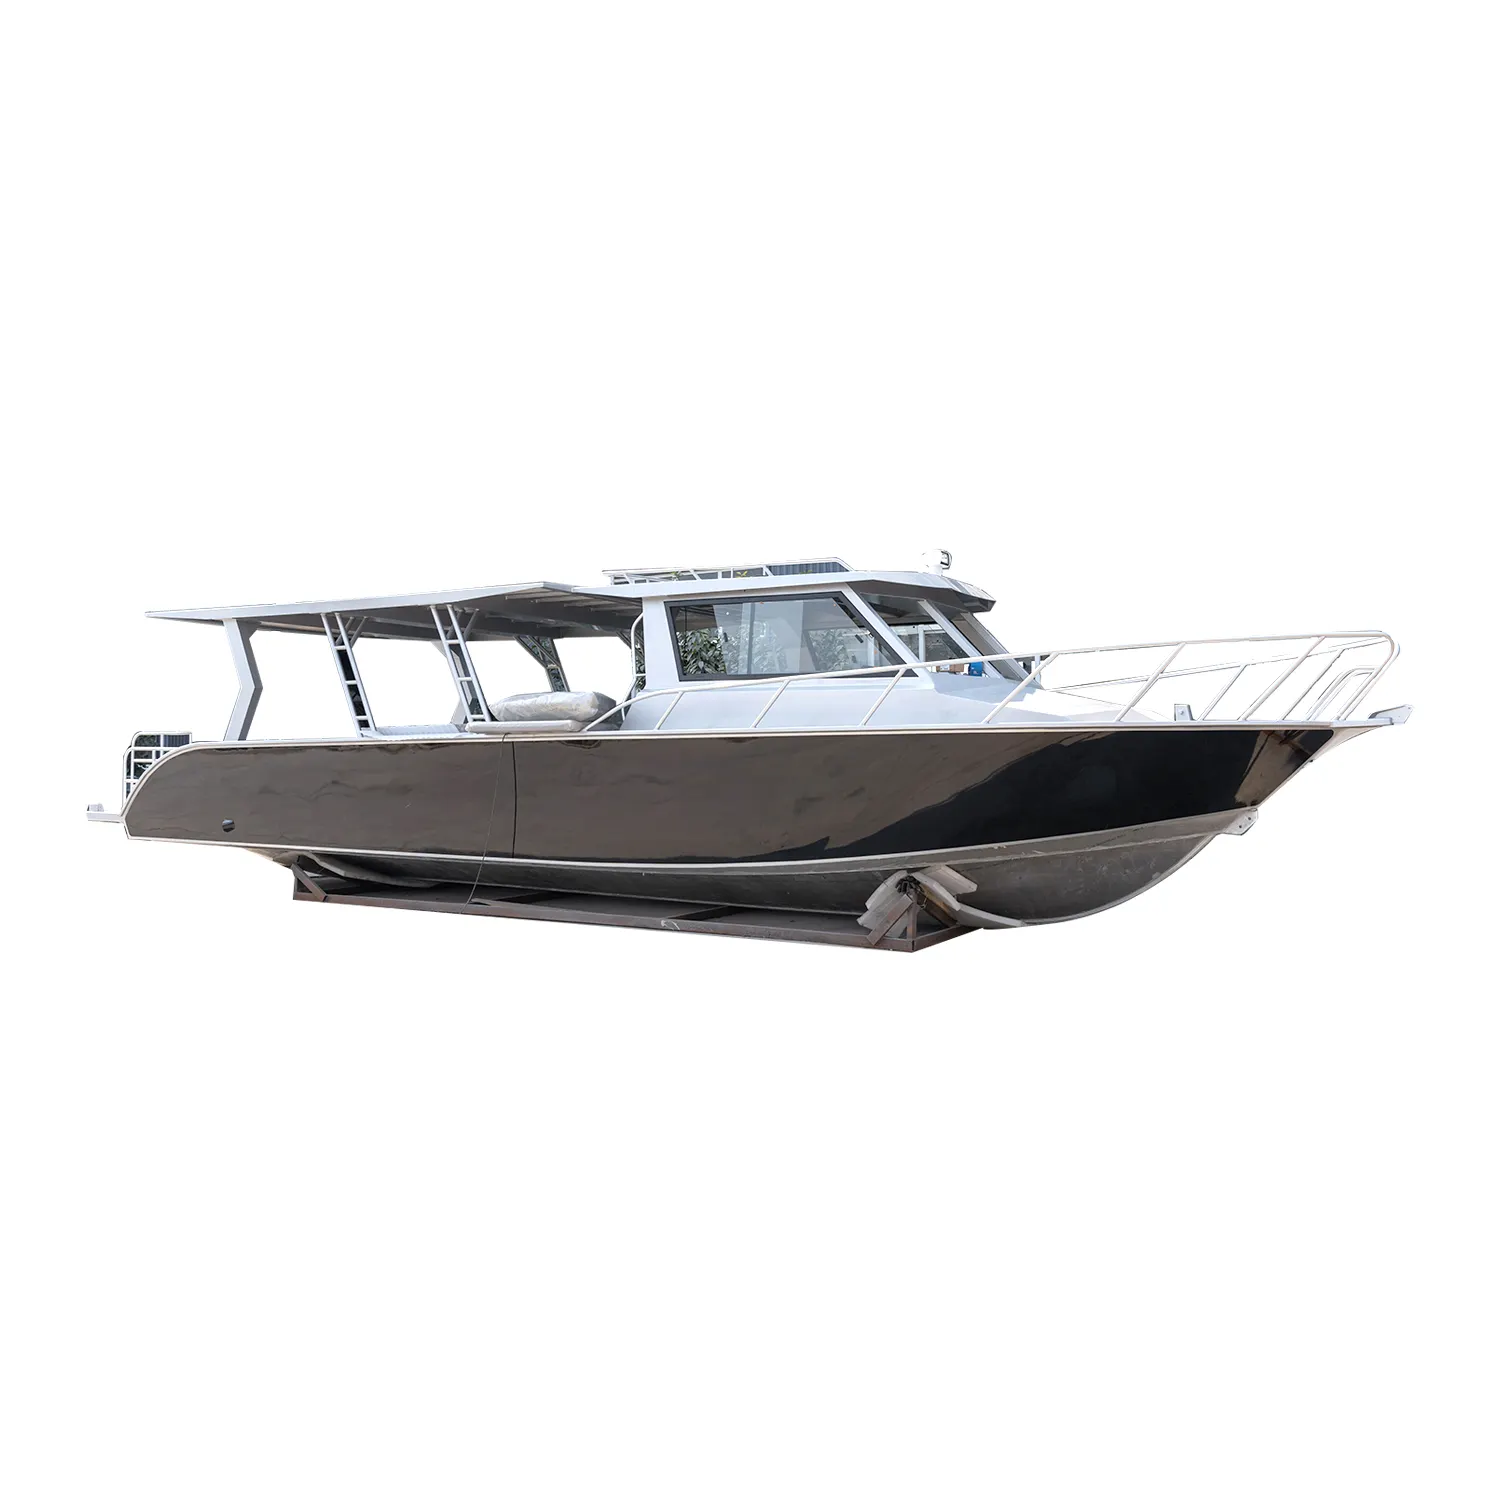 Vangelo 38ft/11.6m stile di Vita in alluminio saldato barca da pesca yacht di lusso per la vendita